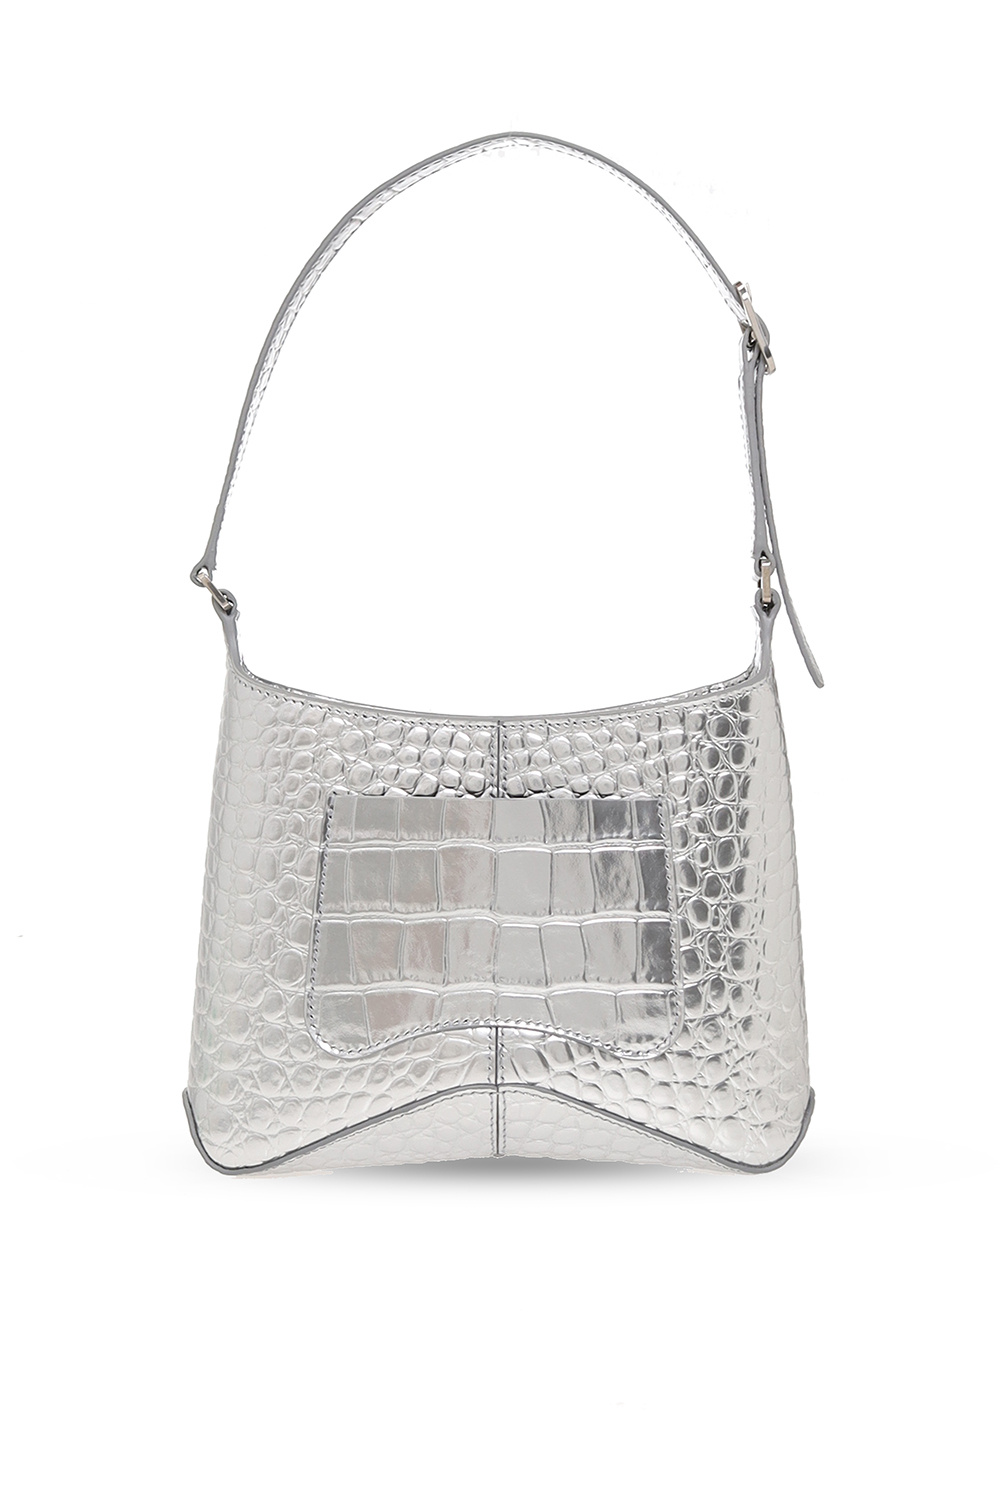 Balenciaga 'XX Small' hobo bag, Women's Bags